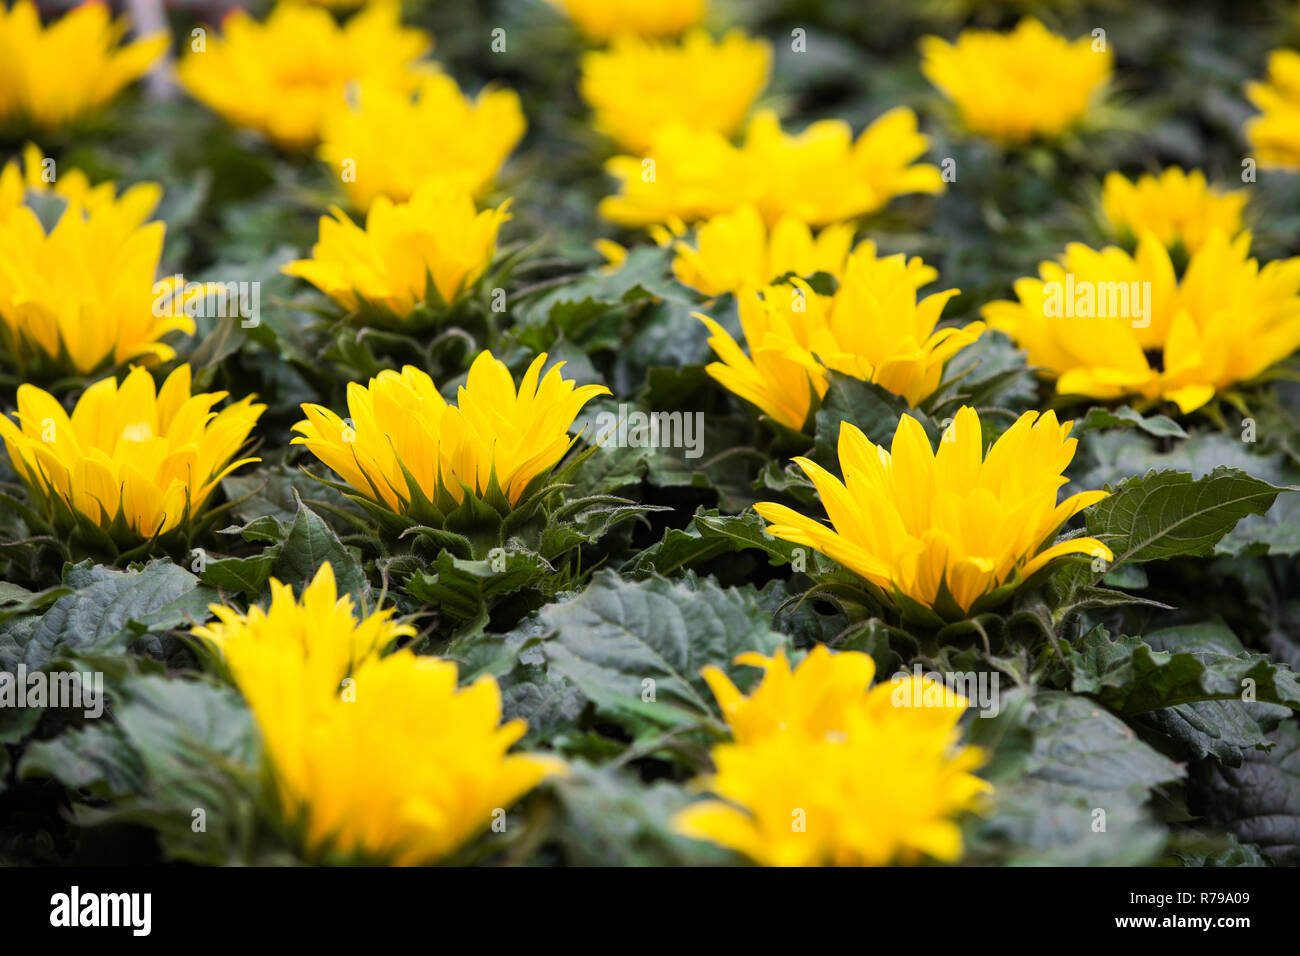 Une image complète nature fond de fleurs jaune vif avec des feuilles vertes dans une rangée et en remplissant le cadre with copy space Banque D'Images